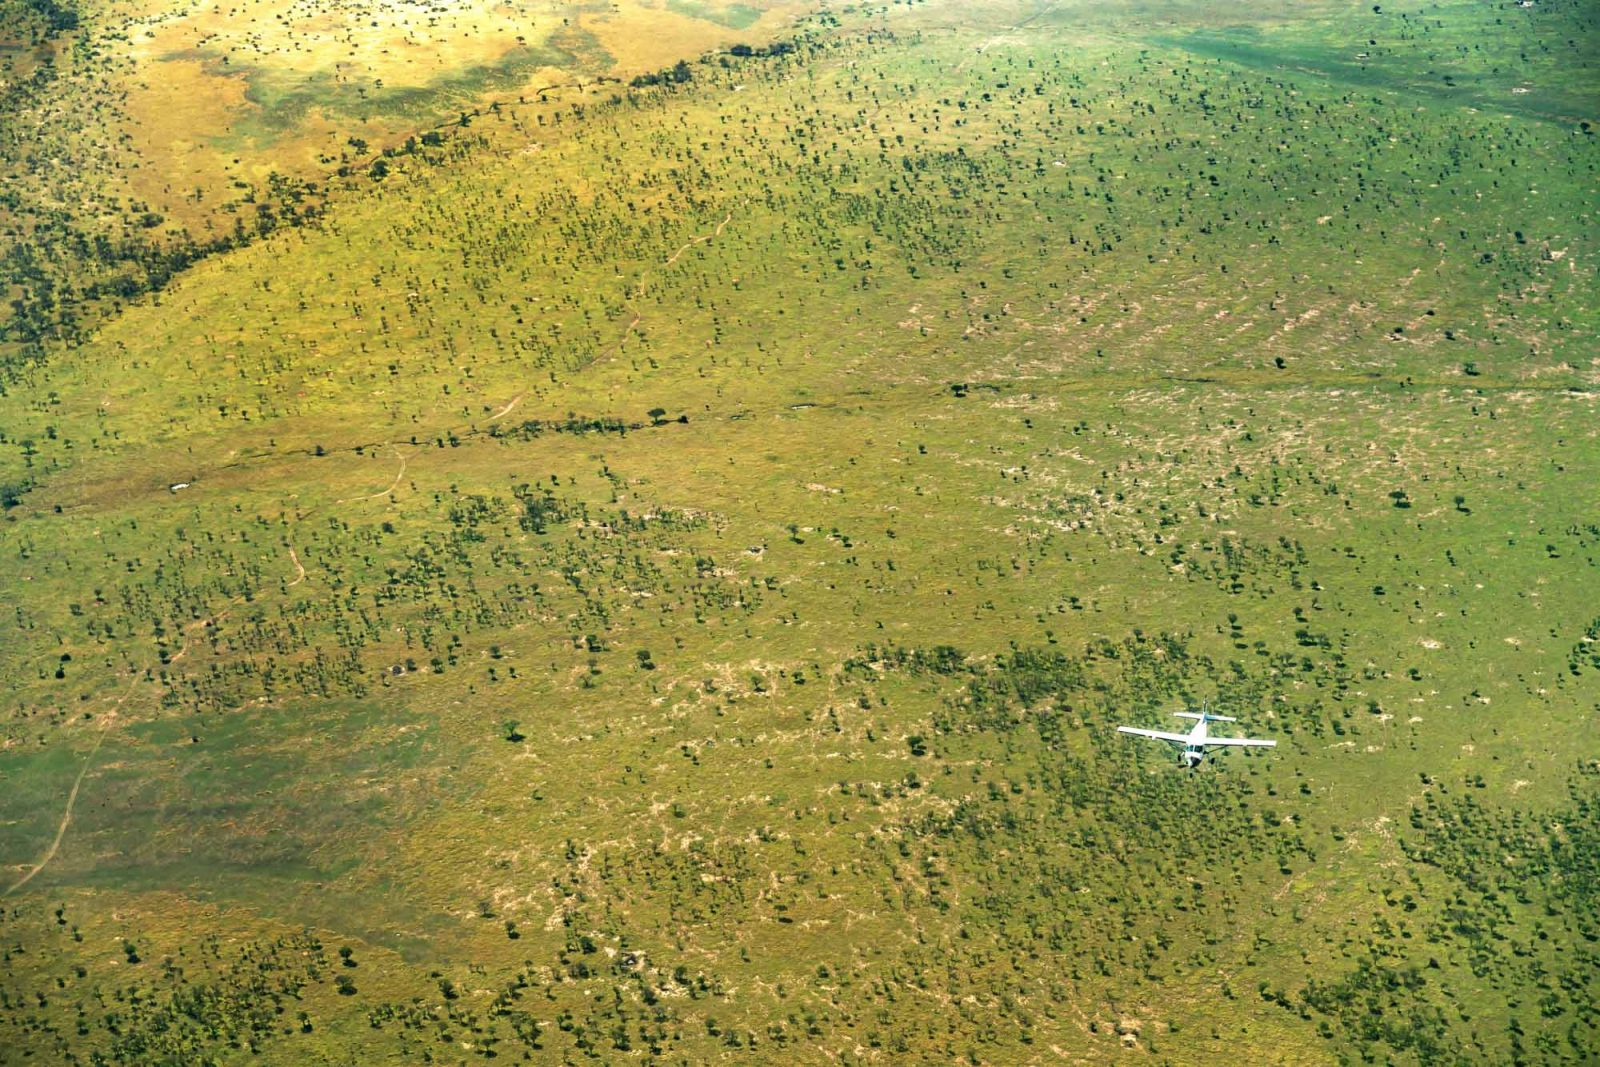 Wildebeest migration in the Serengeti